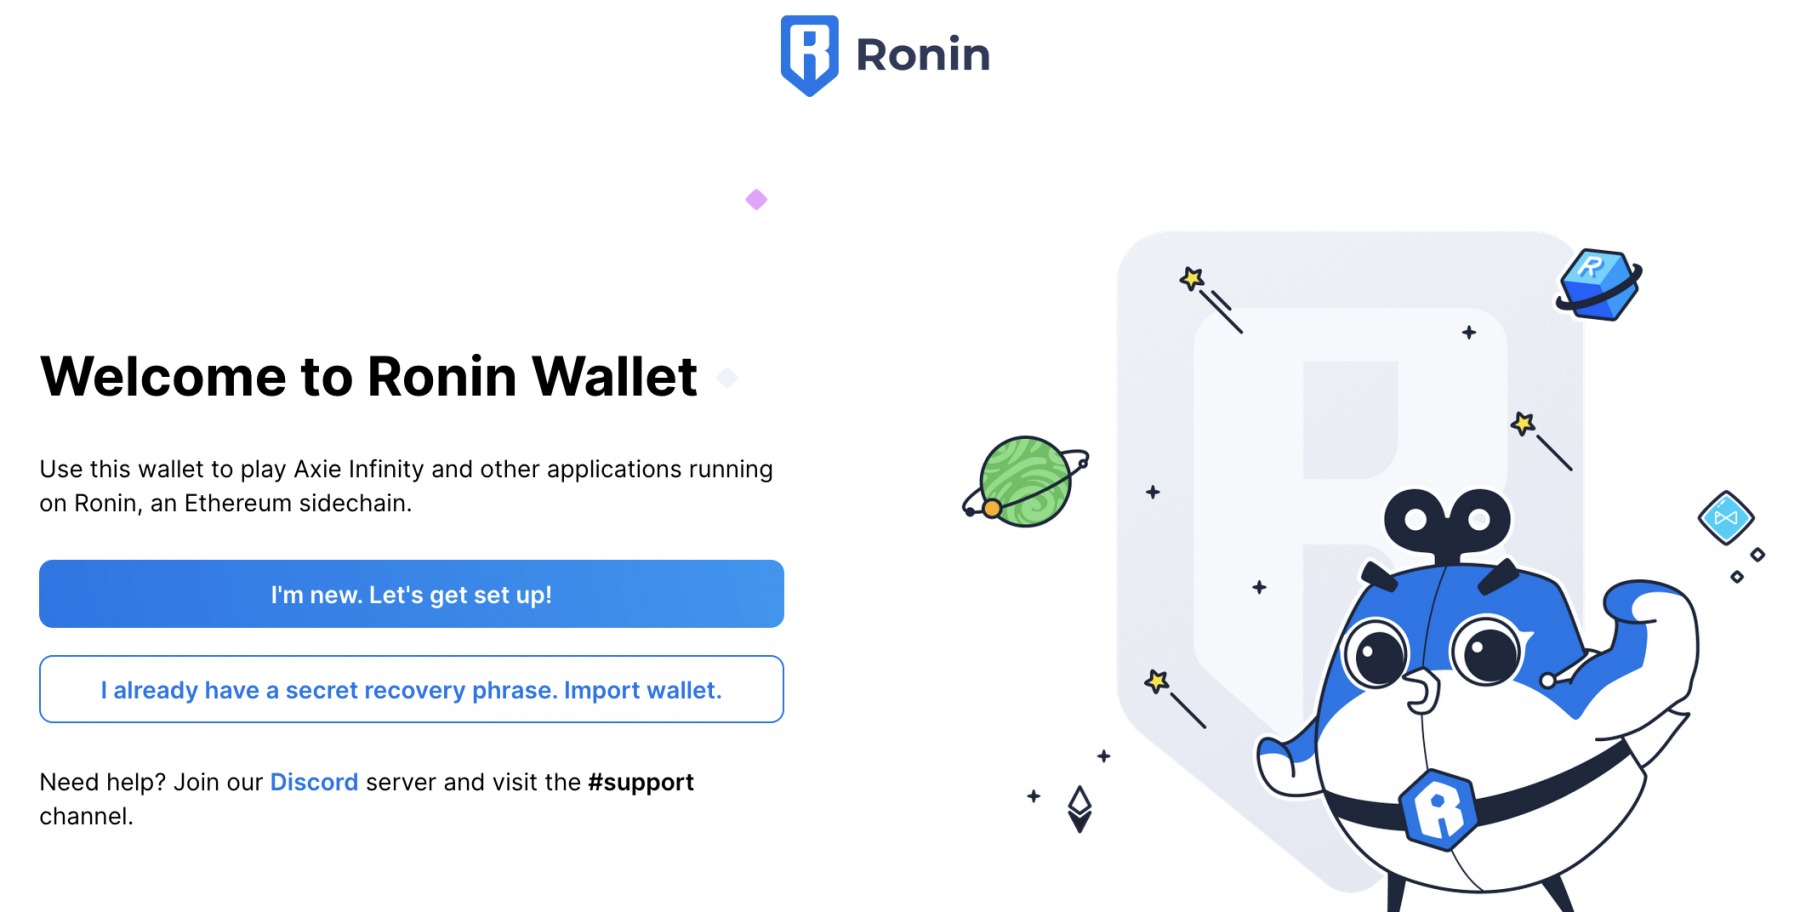 Das neue Ronin Wallet erstellen